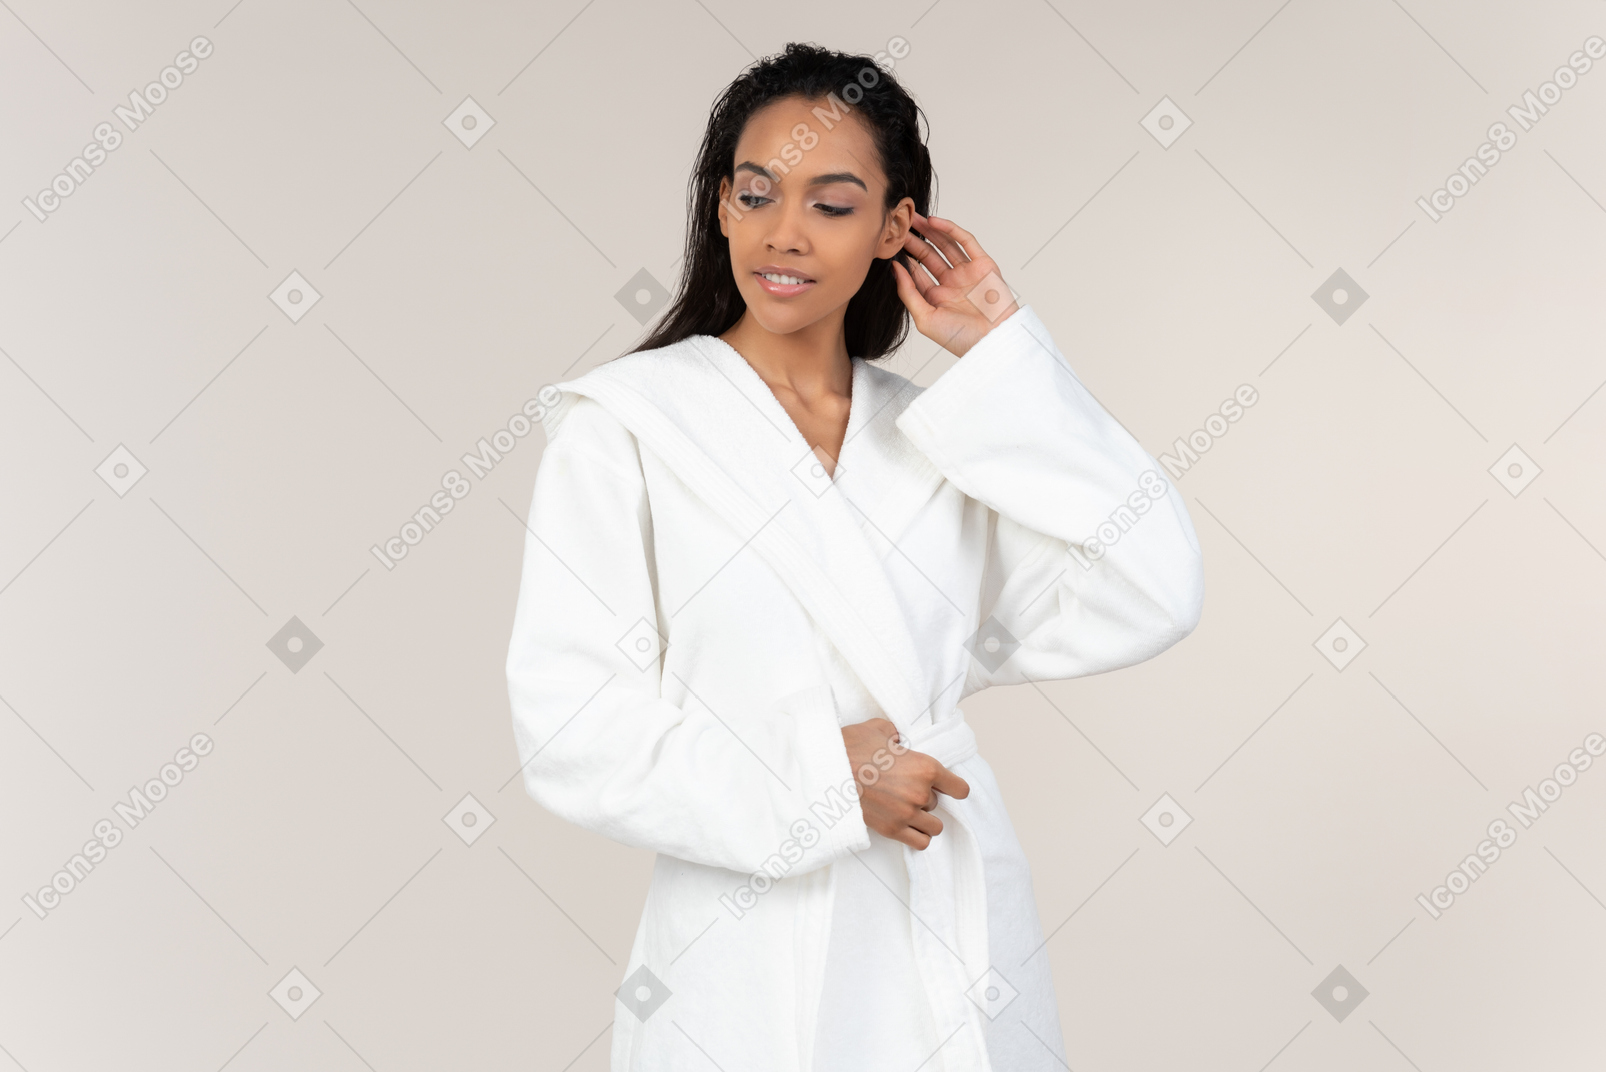 그녀의 아침 루틴에 대해가 흰 가운에 흑인 여성